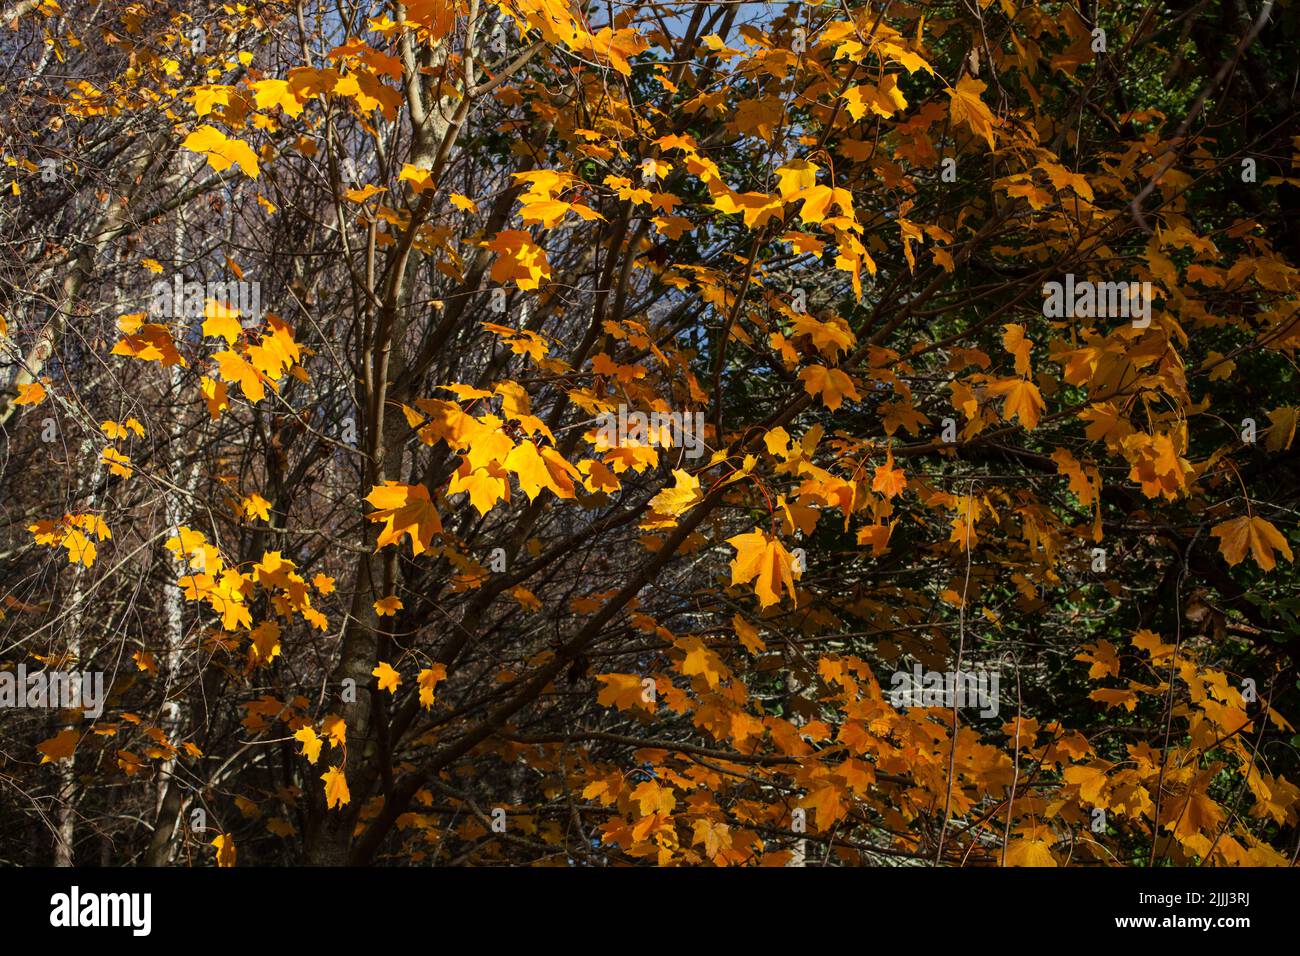 Uno sguardo alla vita in Nuova Zelanda: Una passeggiata nei boschi in autunno. Colori meravigliosi. Foto Stock